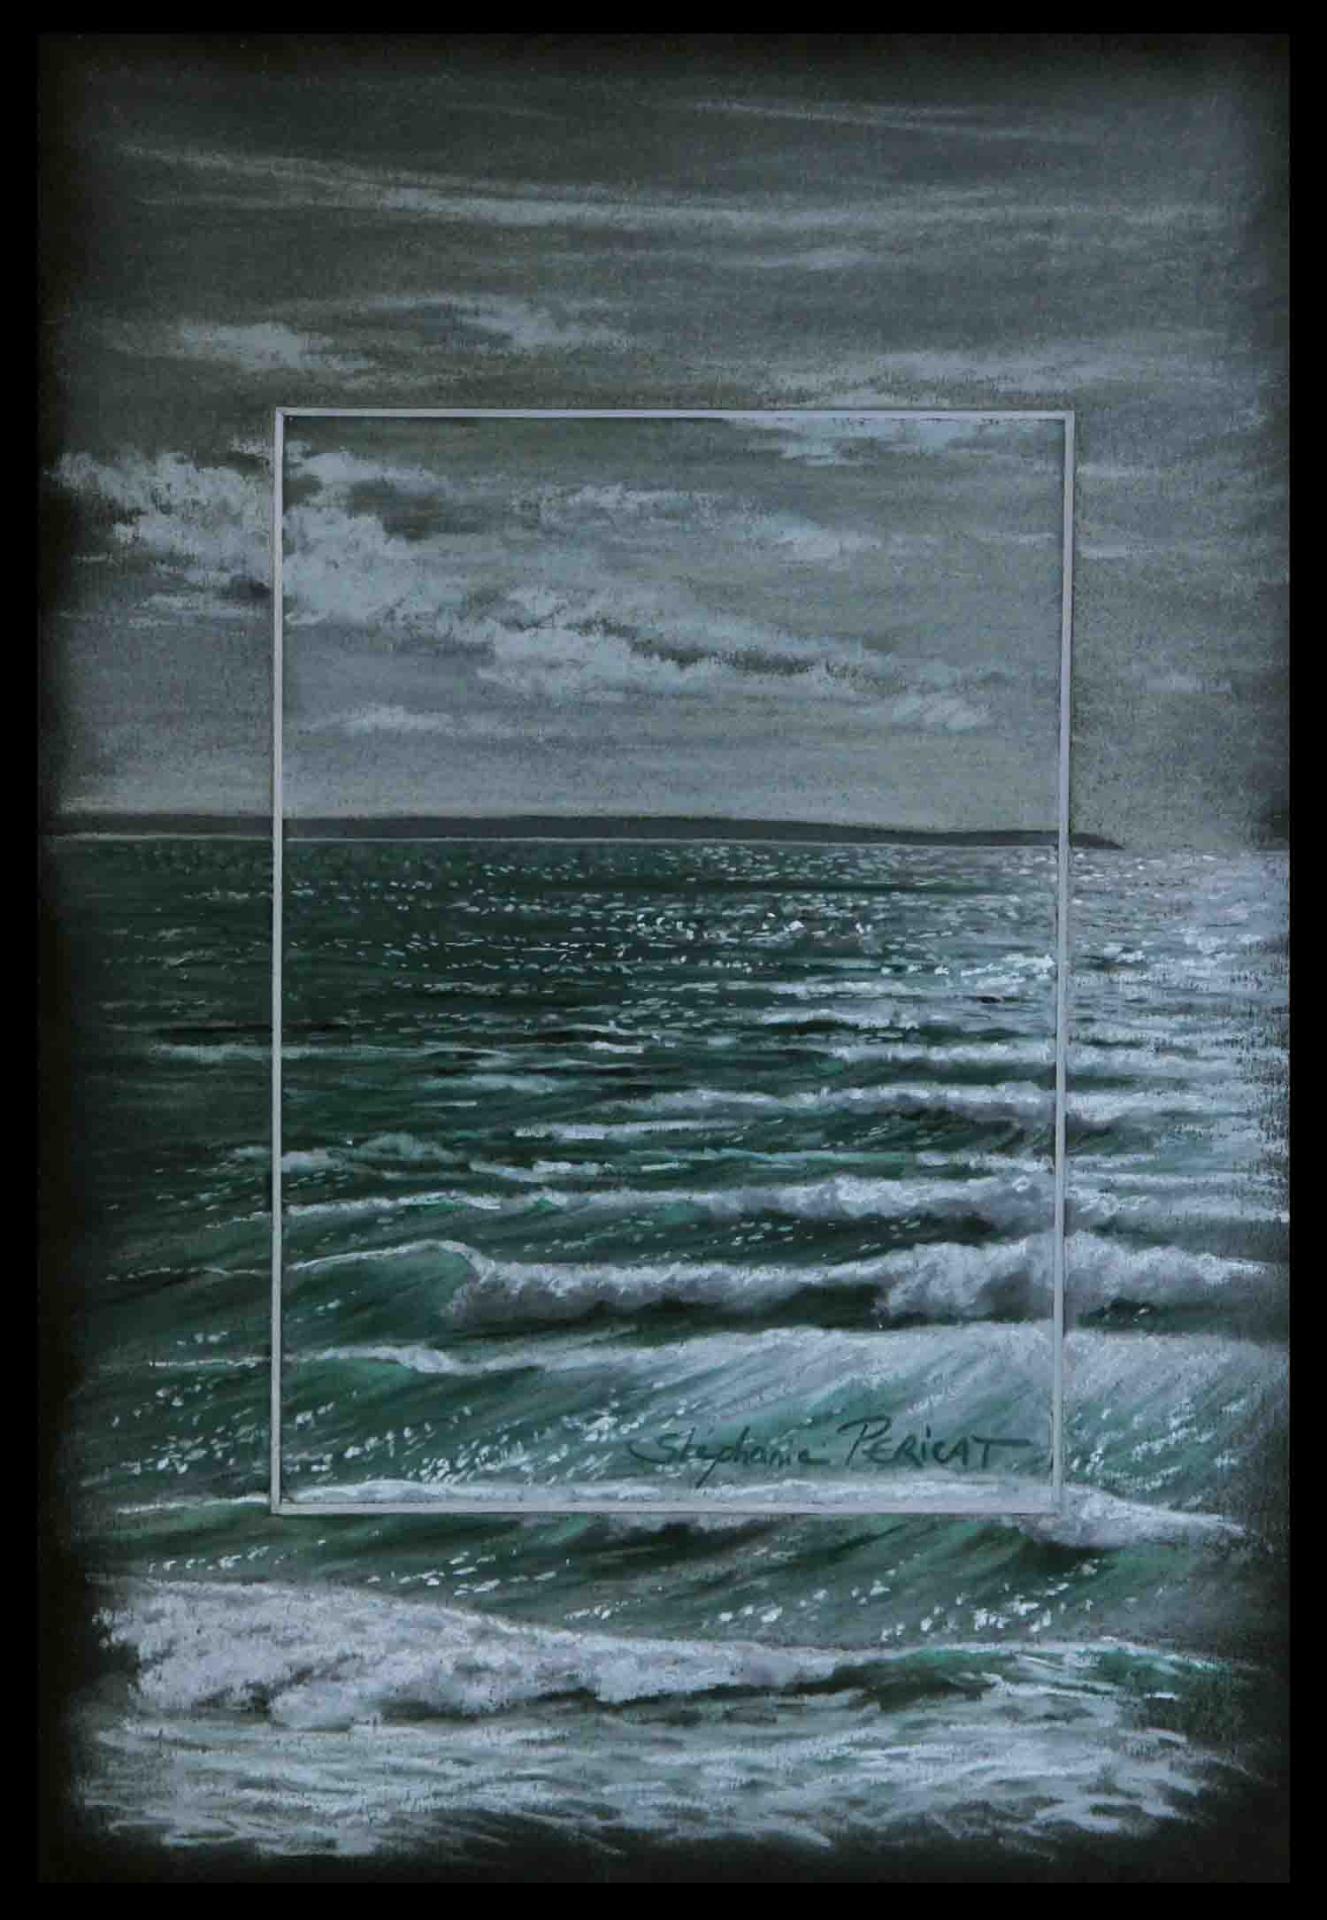 vagues de lumières (waves of light) - 20x30cm